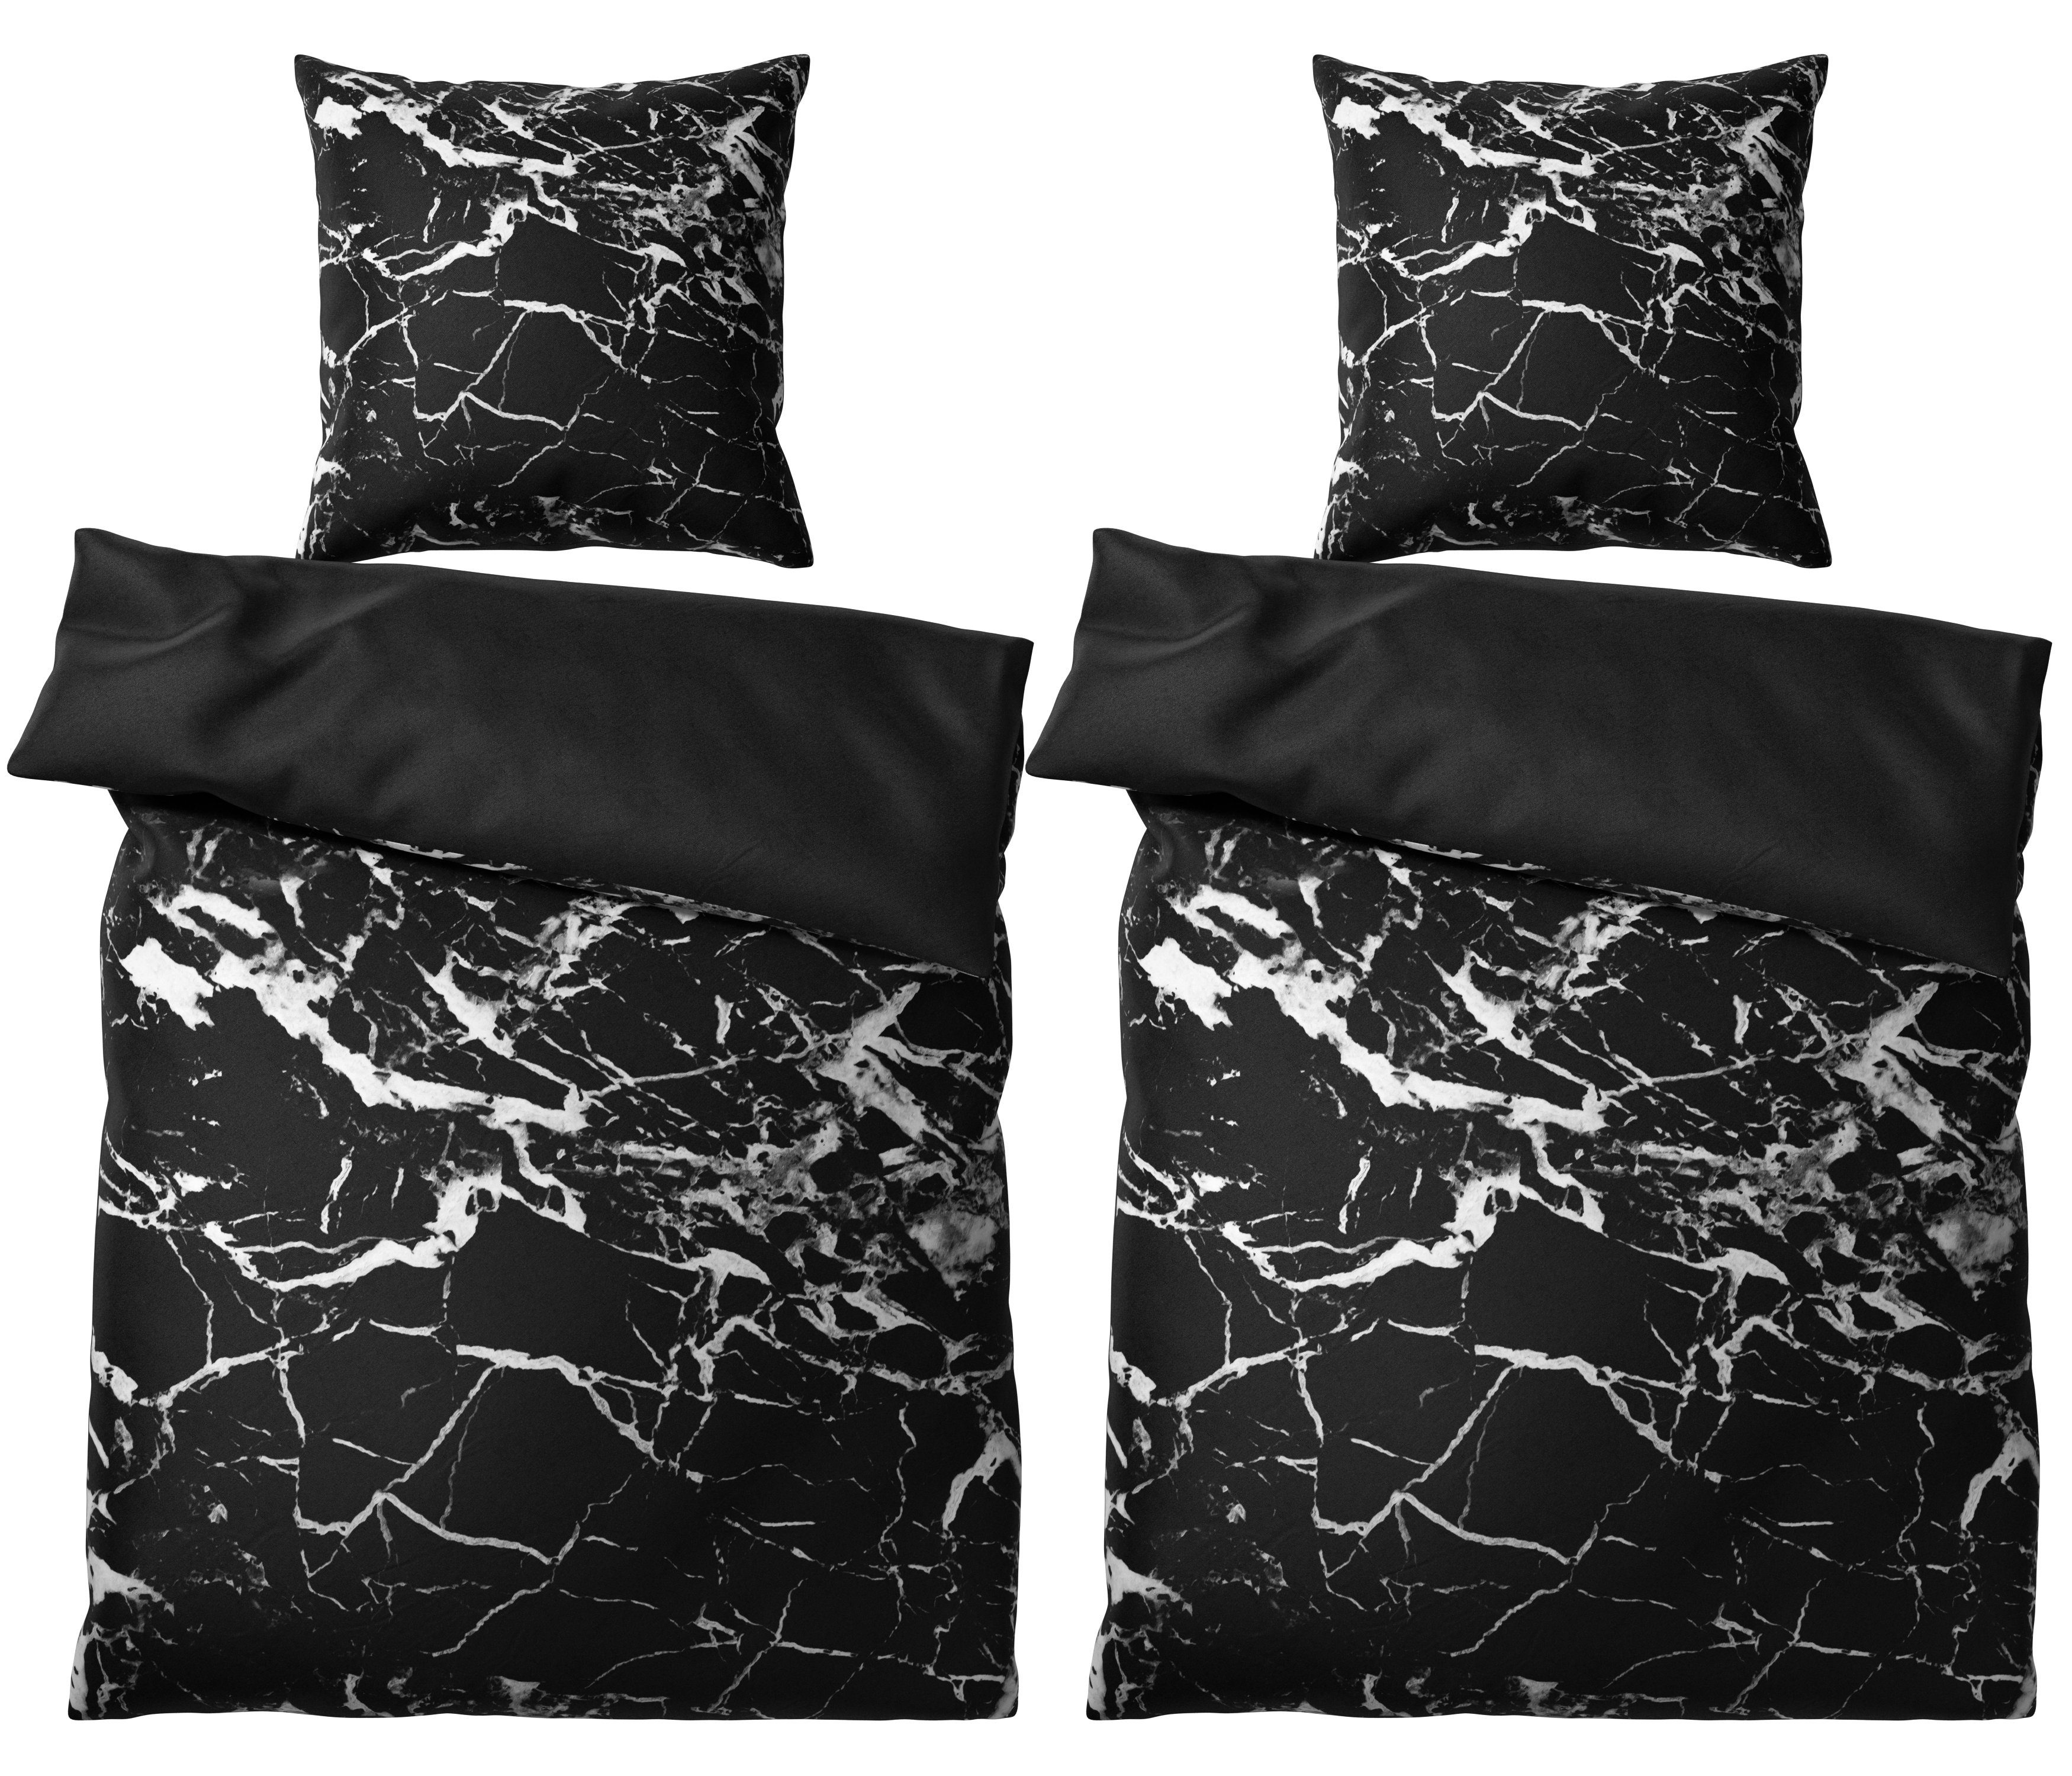 Bettwäsche Marmor Schwarz 135x200 cm, Bettbezug und Kissenbezug, Sanilo, Baumwolle, 4 teilig